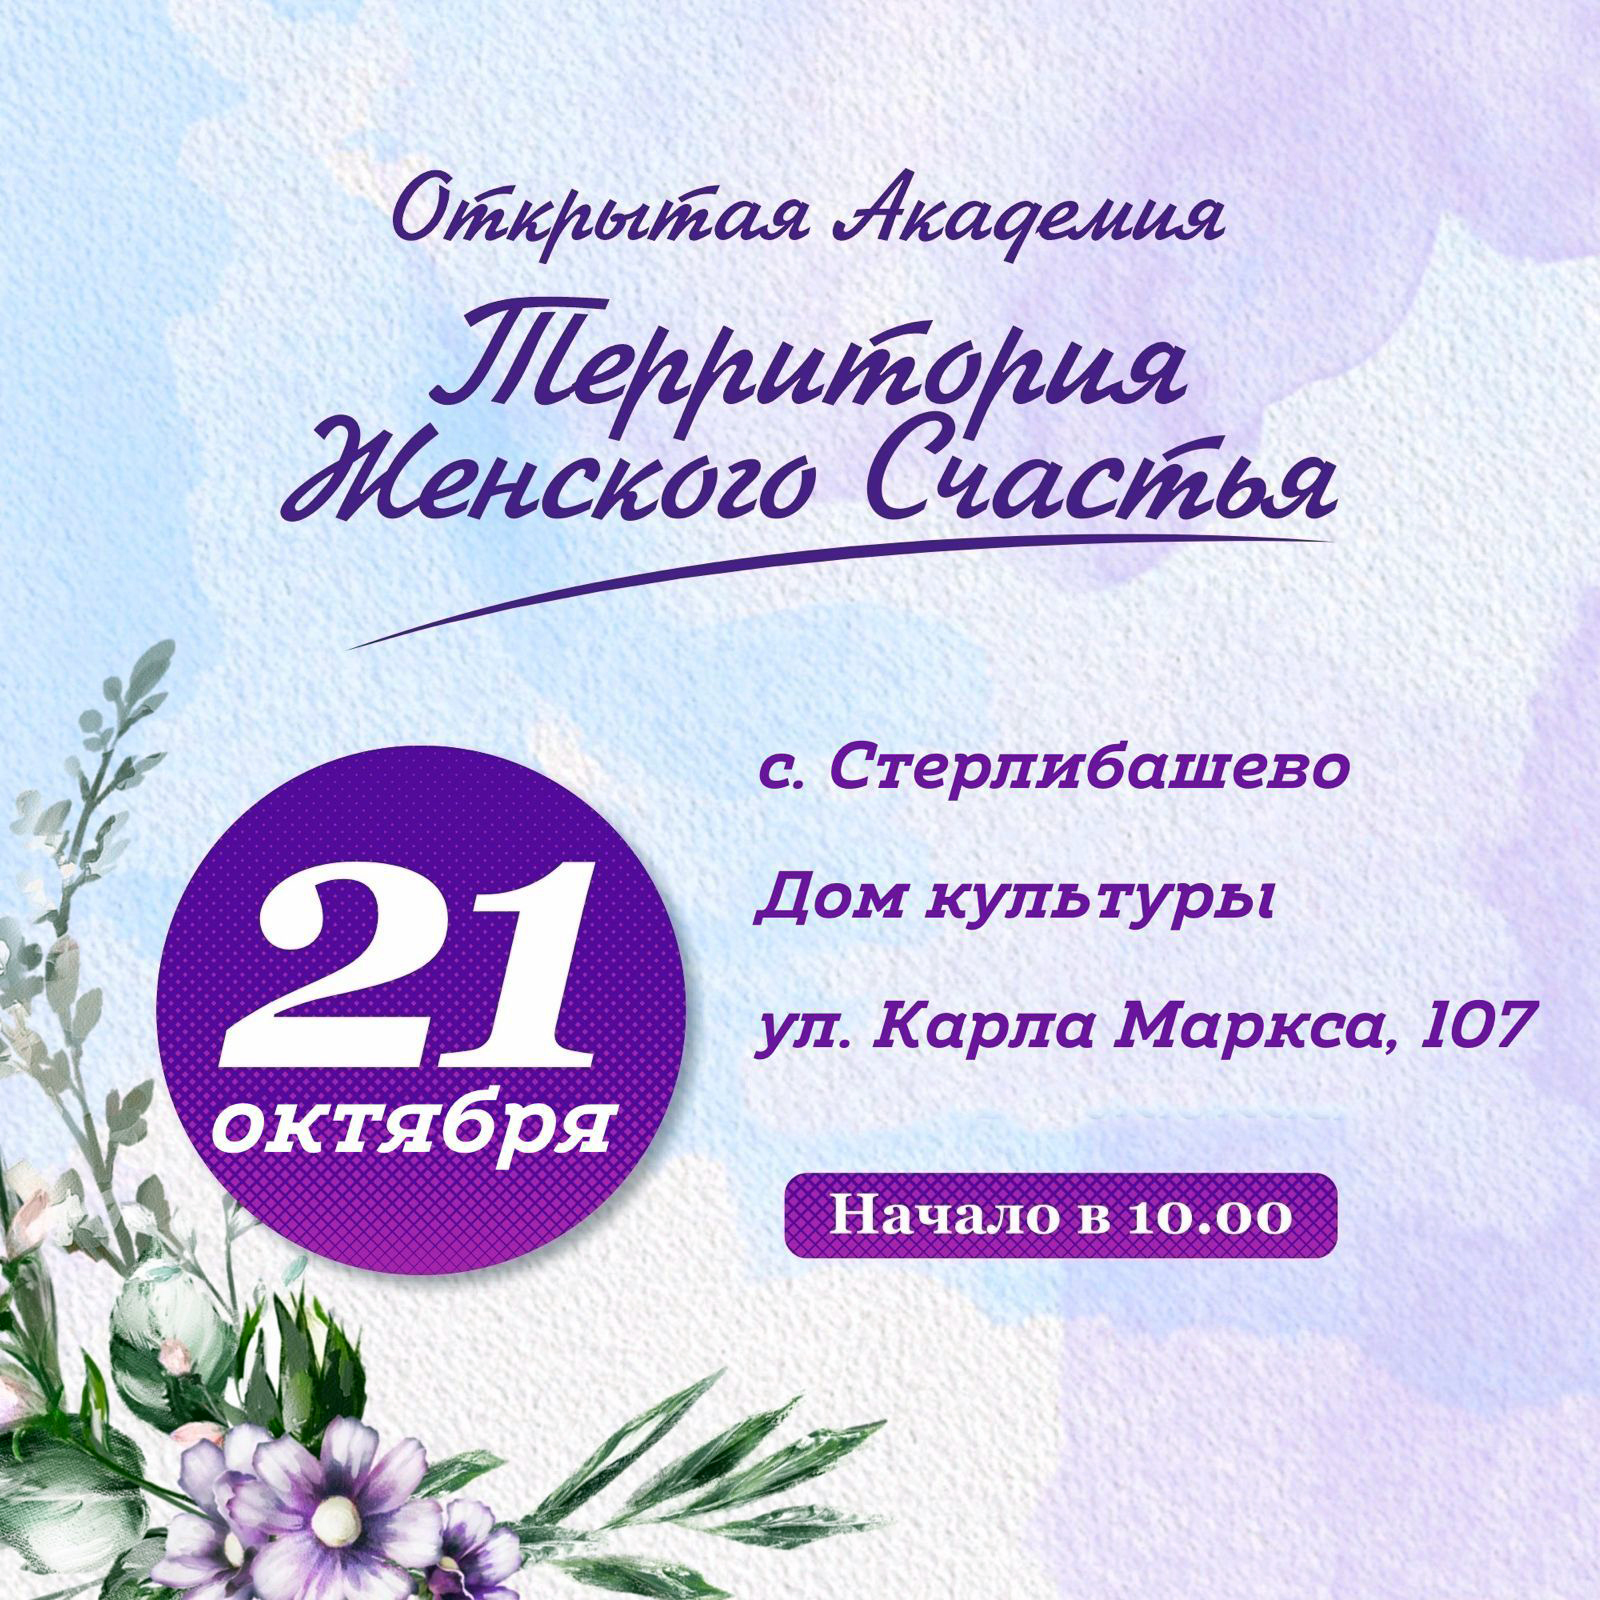 Сегодня, 21 октября, в РДК с.Стерлибашево проходит Открытая Академия «Территория женского счастья»